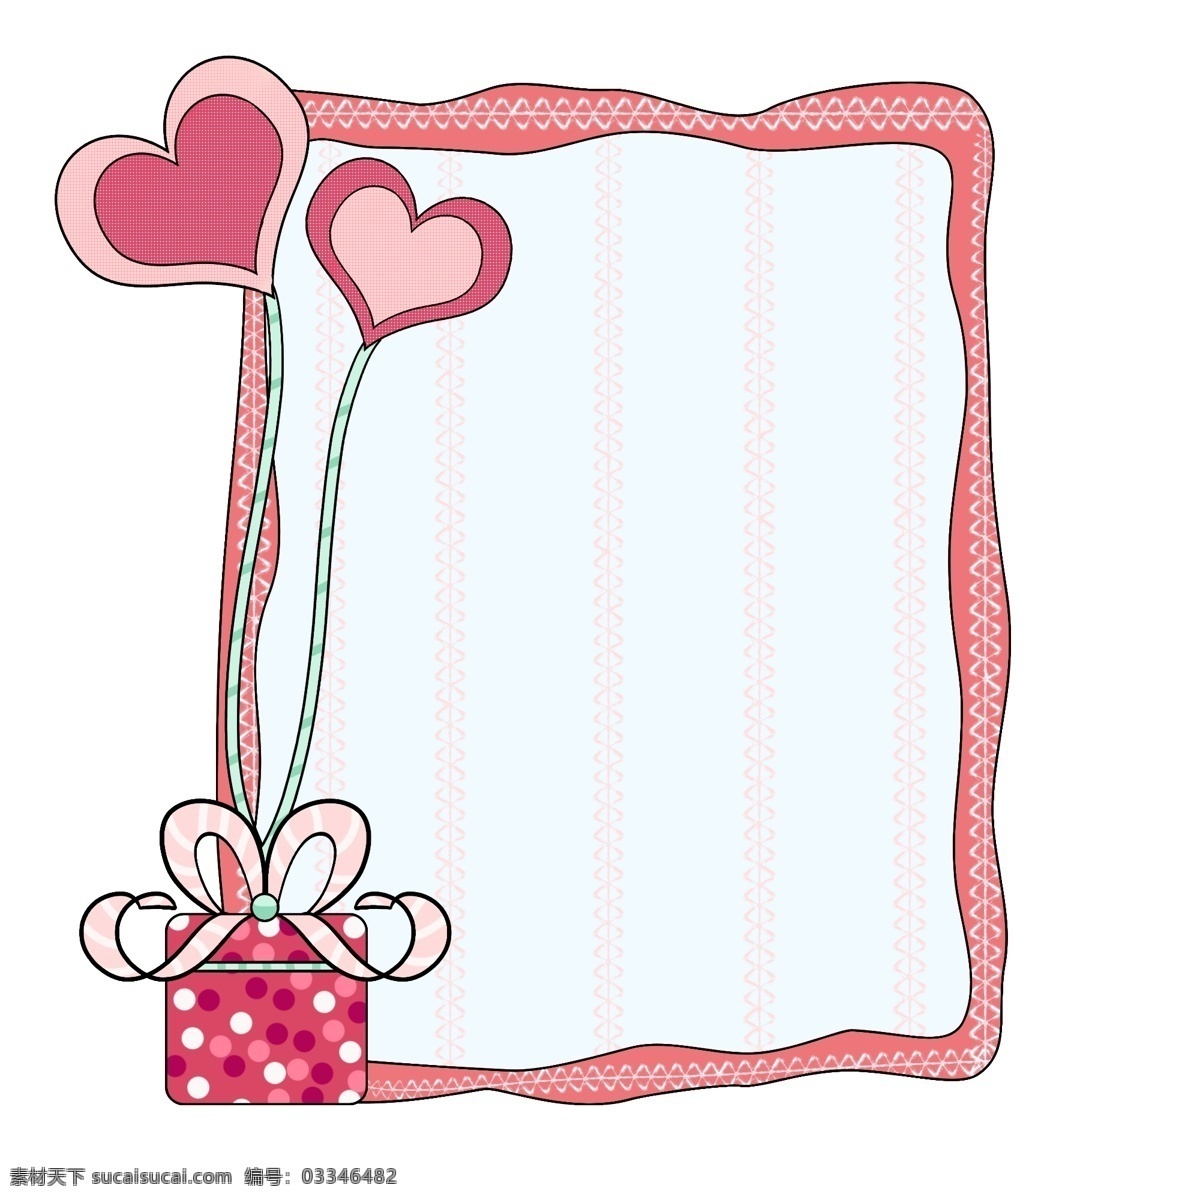 浪漫 气球 礼物 框框 浪漫框框 气球框框 礼物框框 爱情边框 爱心 粉色浪漫